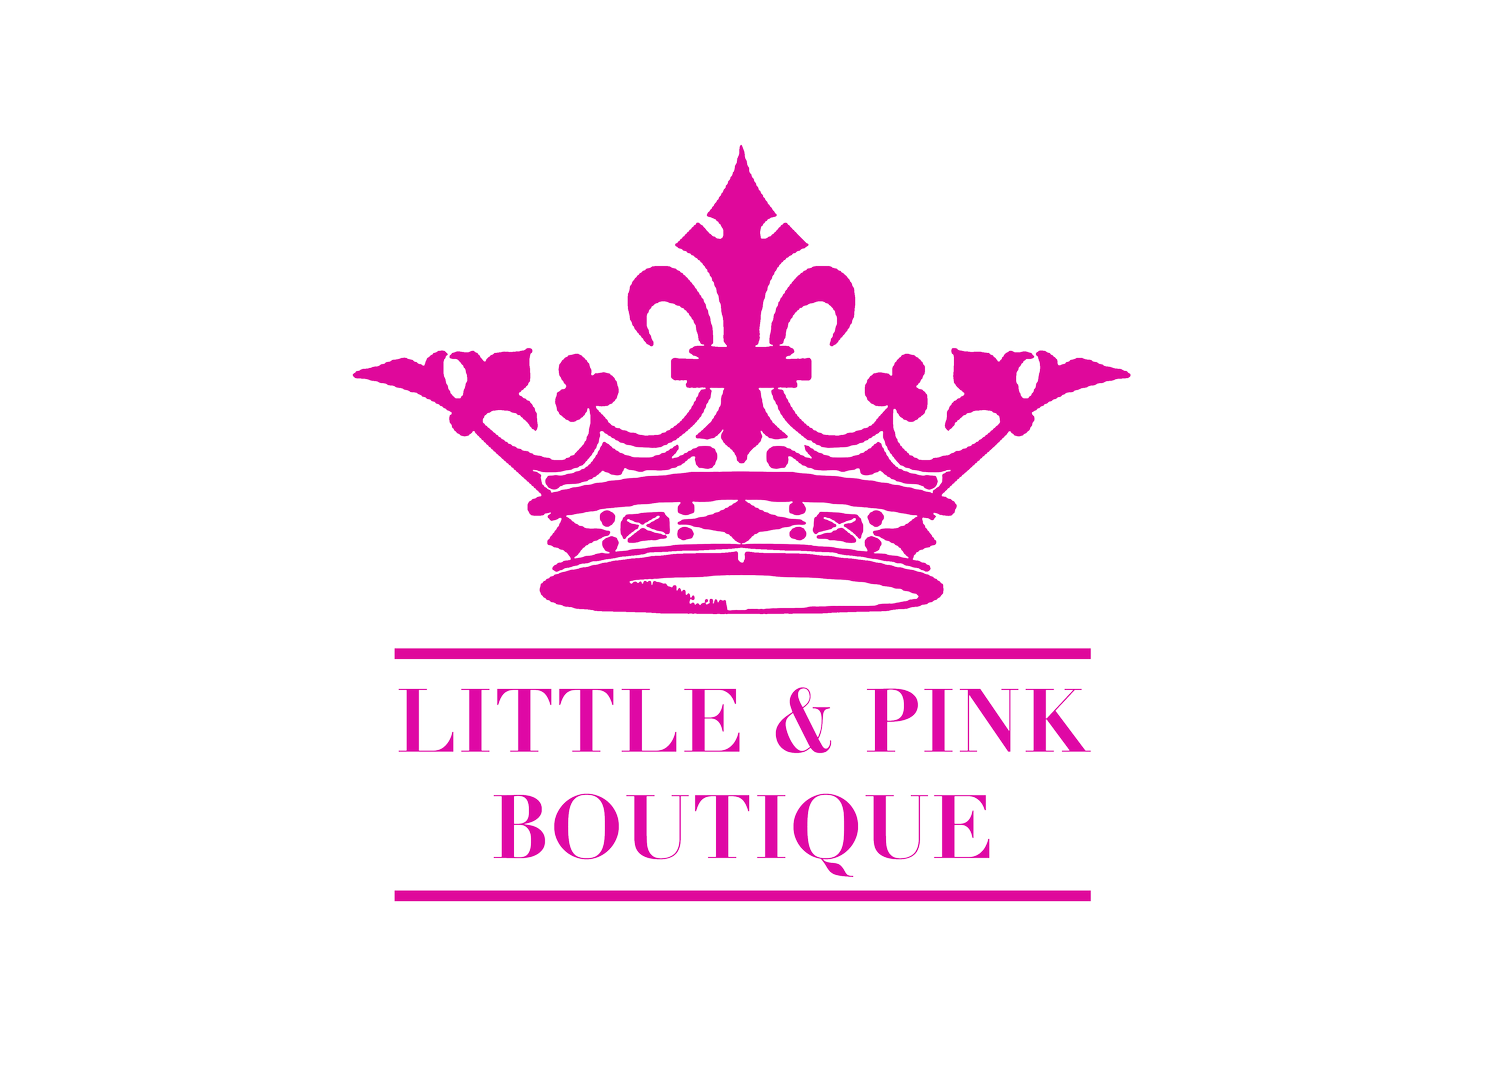 Little & Pink Boutique